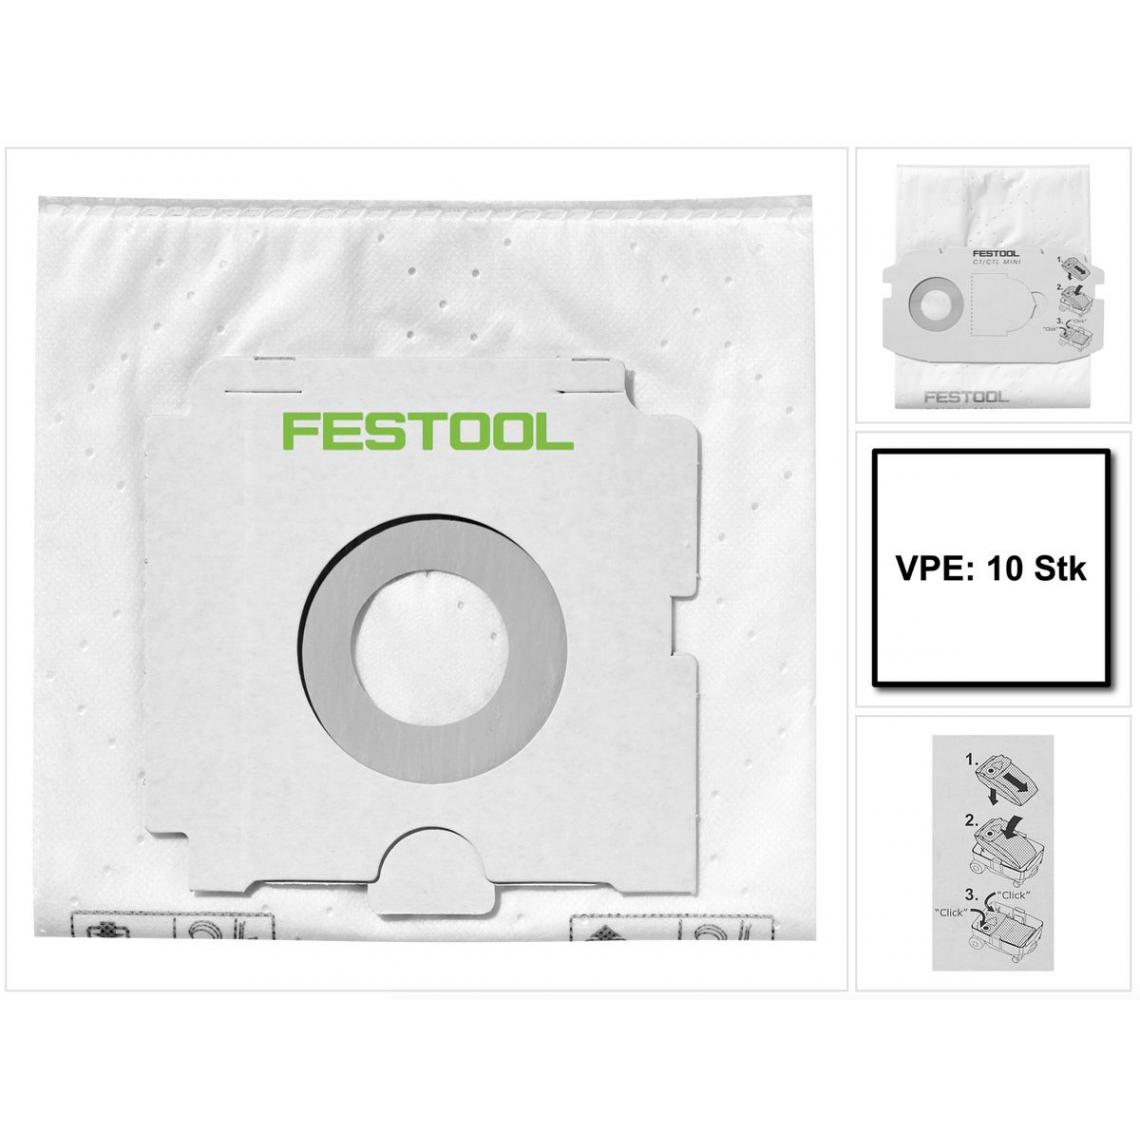 Festool - Festool SELFCLEAN Sacs filtre SC FIS-CT 36/10 ( 496186 ) pour aspirateurs mobiles CT 36 - 10 pièces - Accessoire entretien des sols